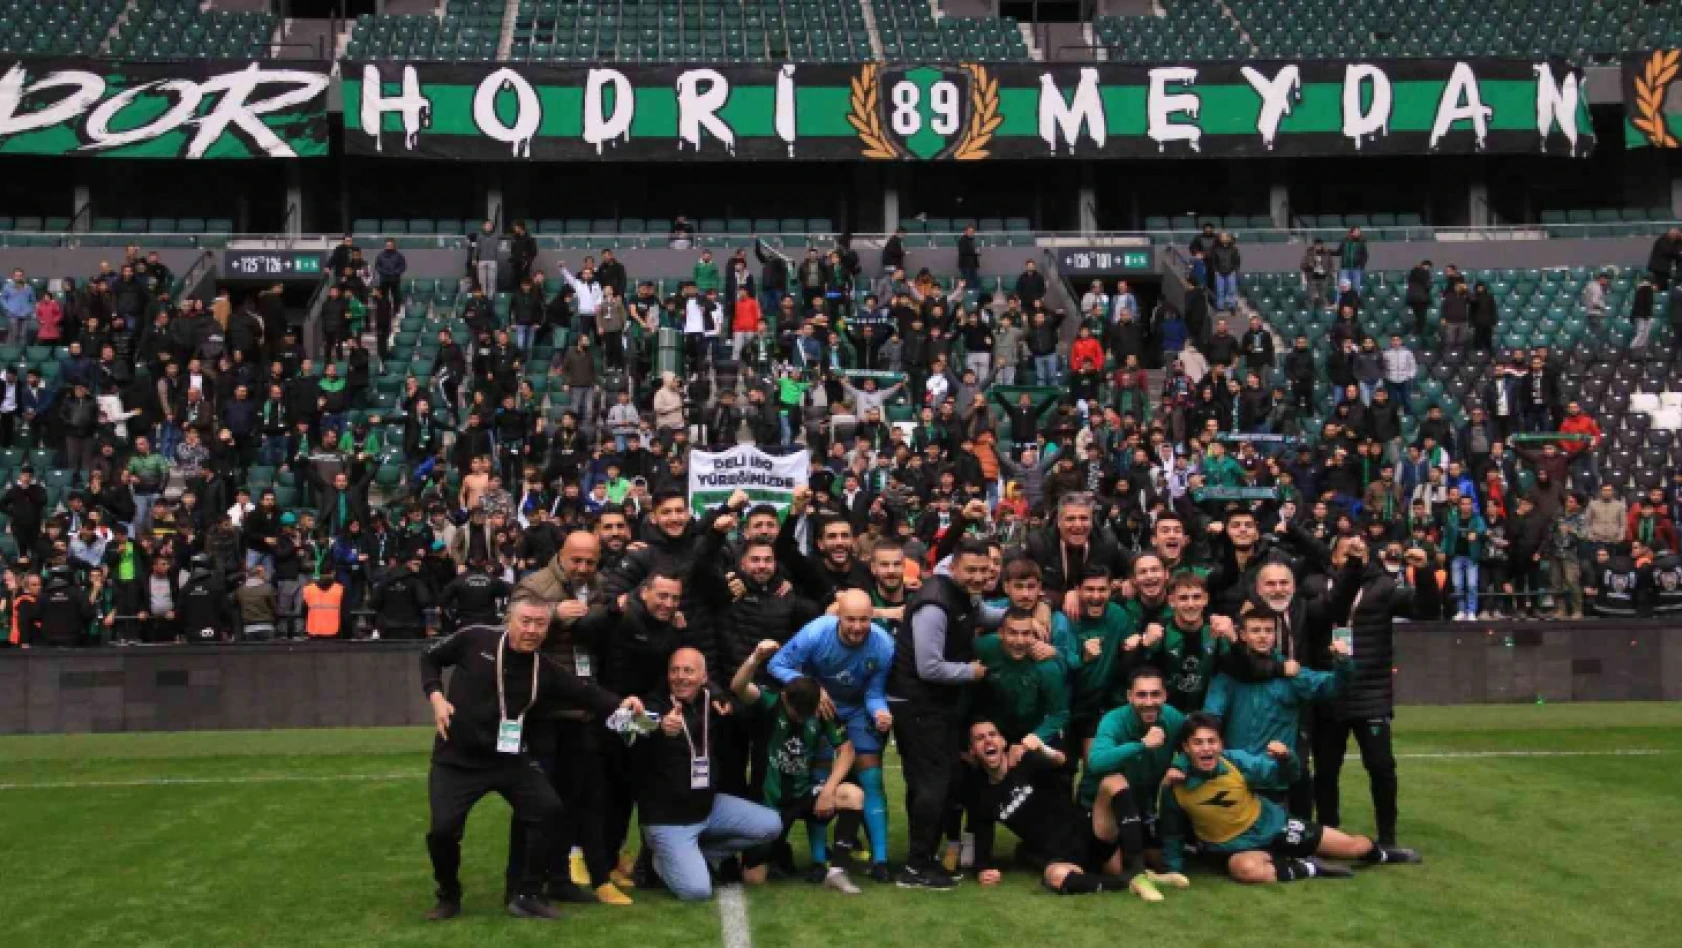 Kocaelispor - Etimesgut Belediyespor maçının ardından